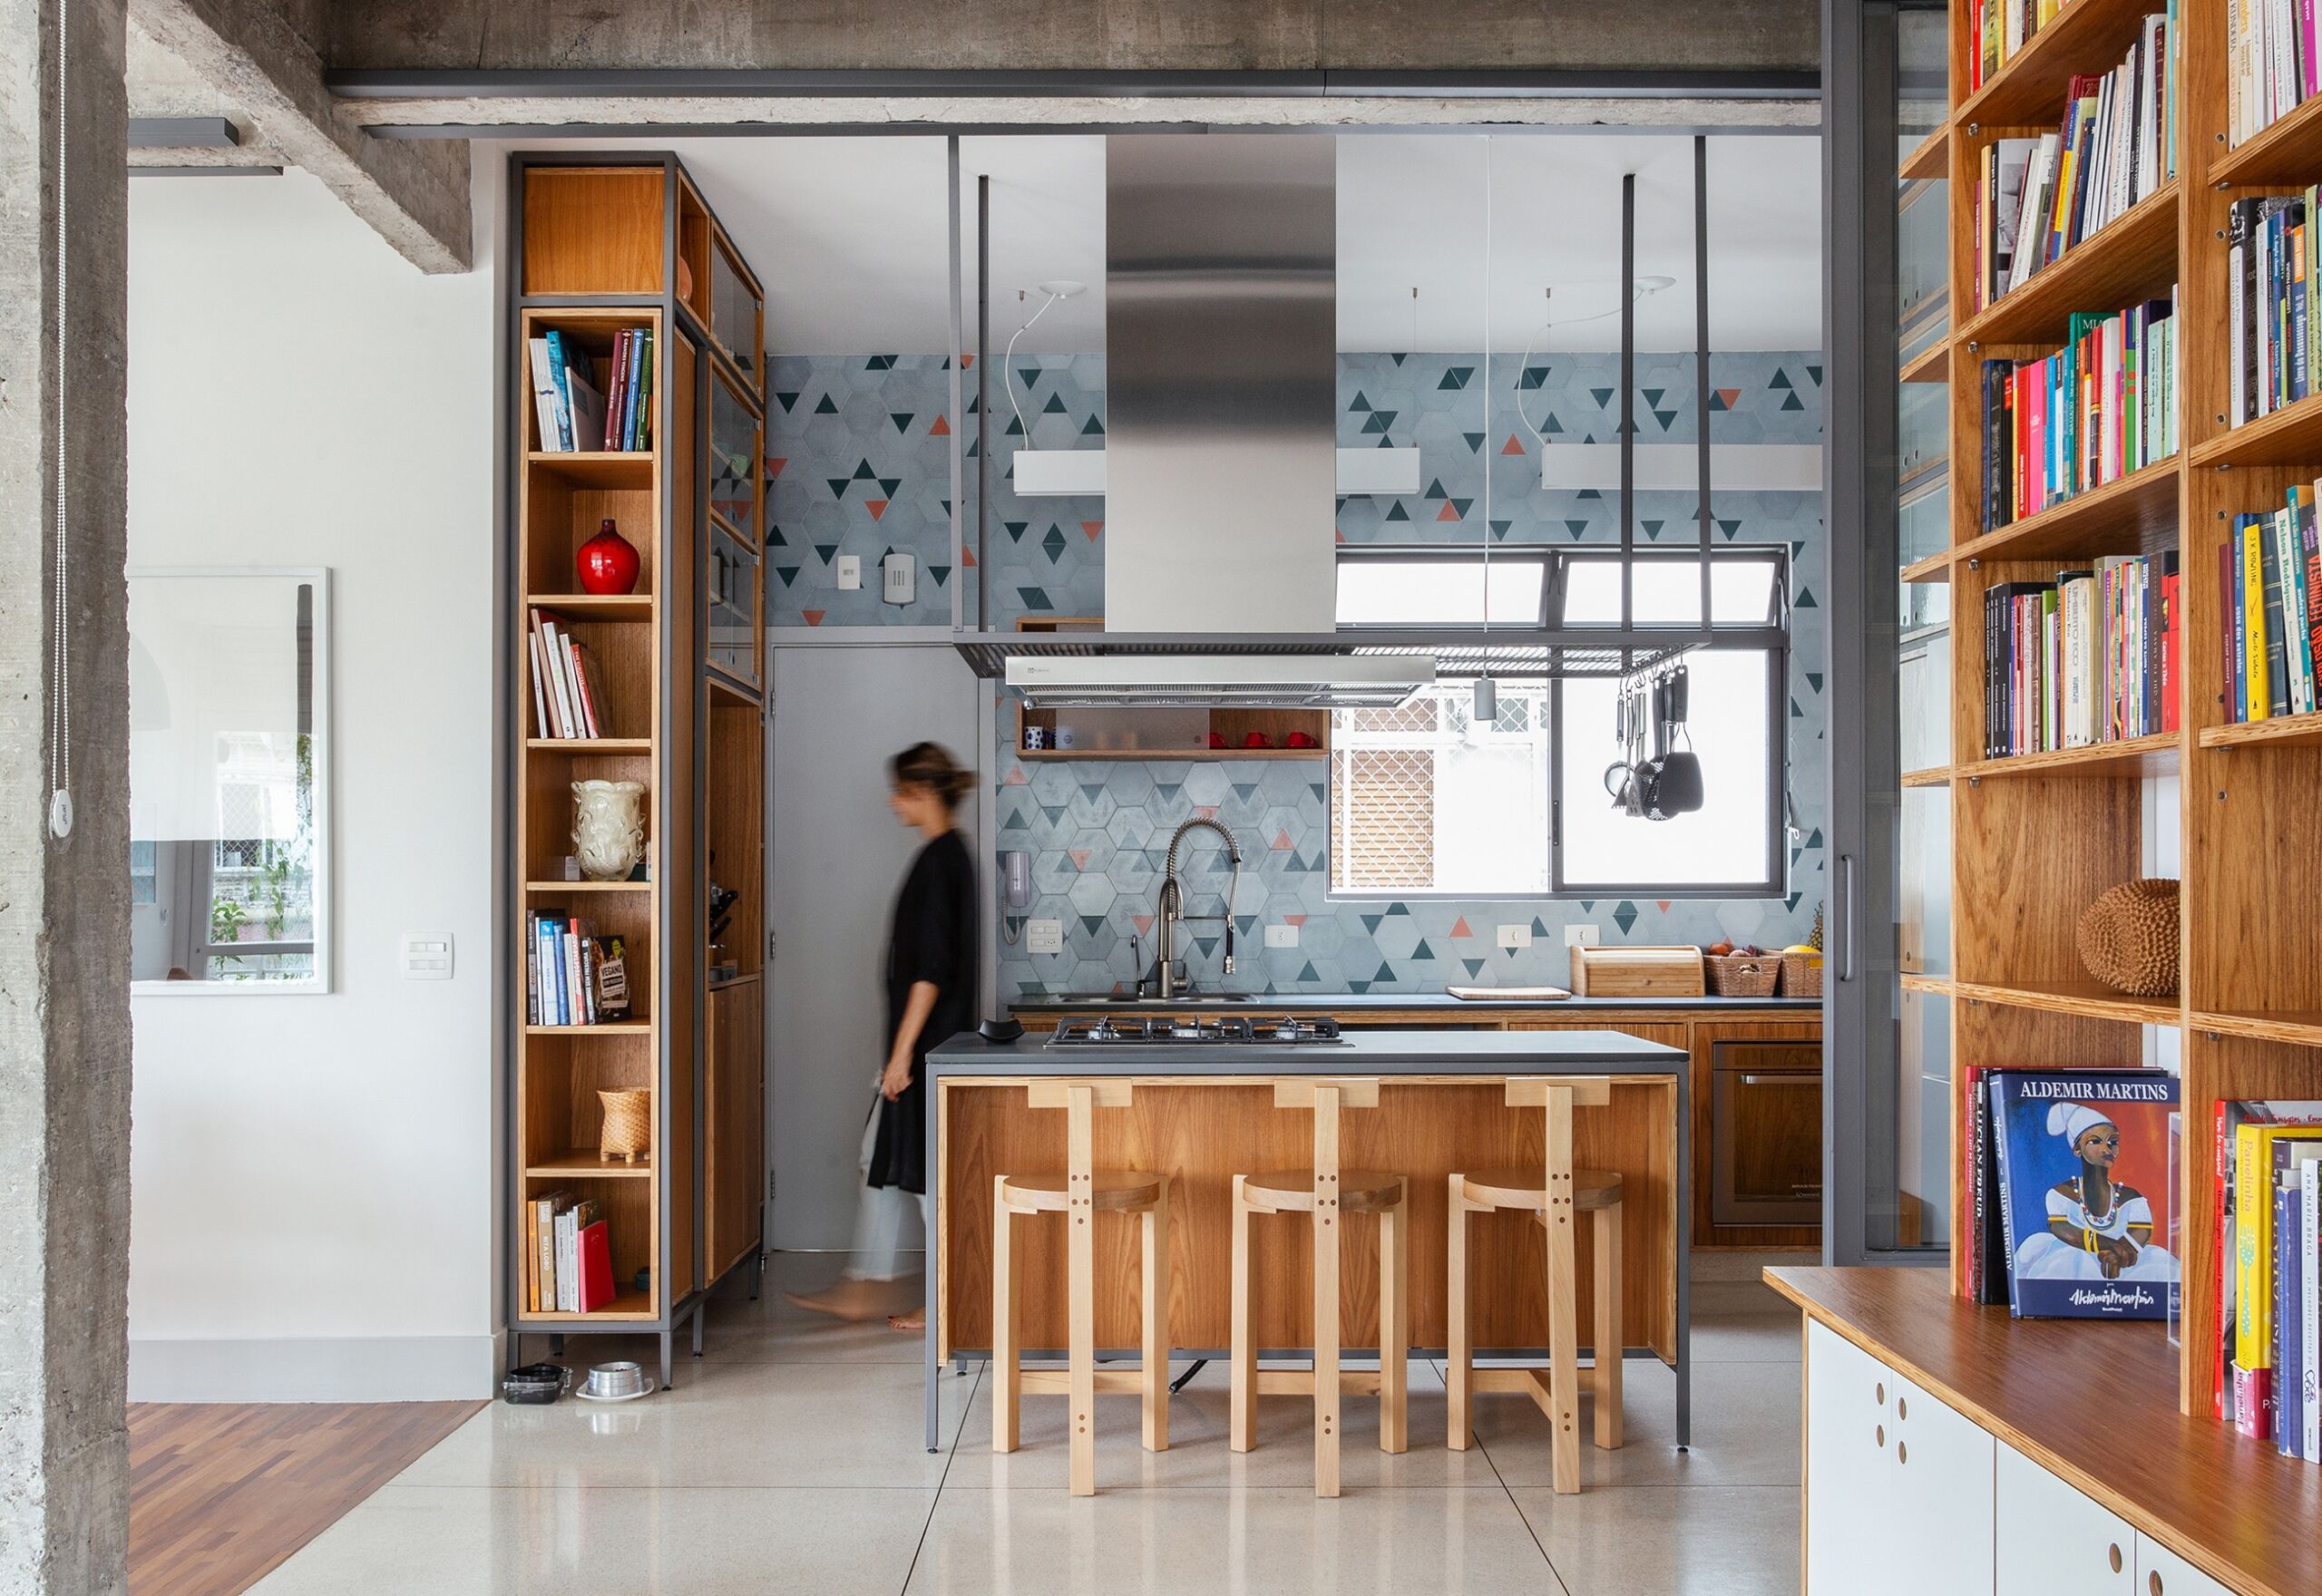 Apartamento com cozinha integrada, marcenaria sob medida e ladrilhos coloridos